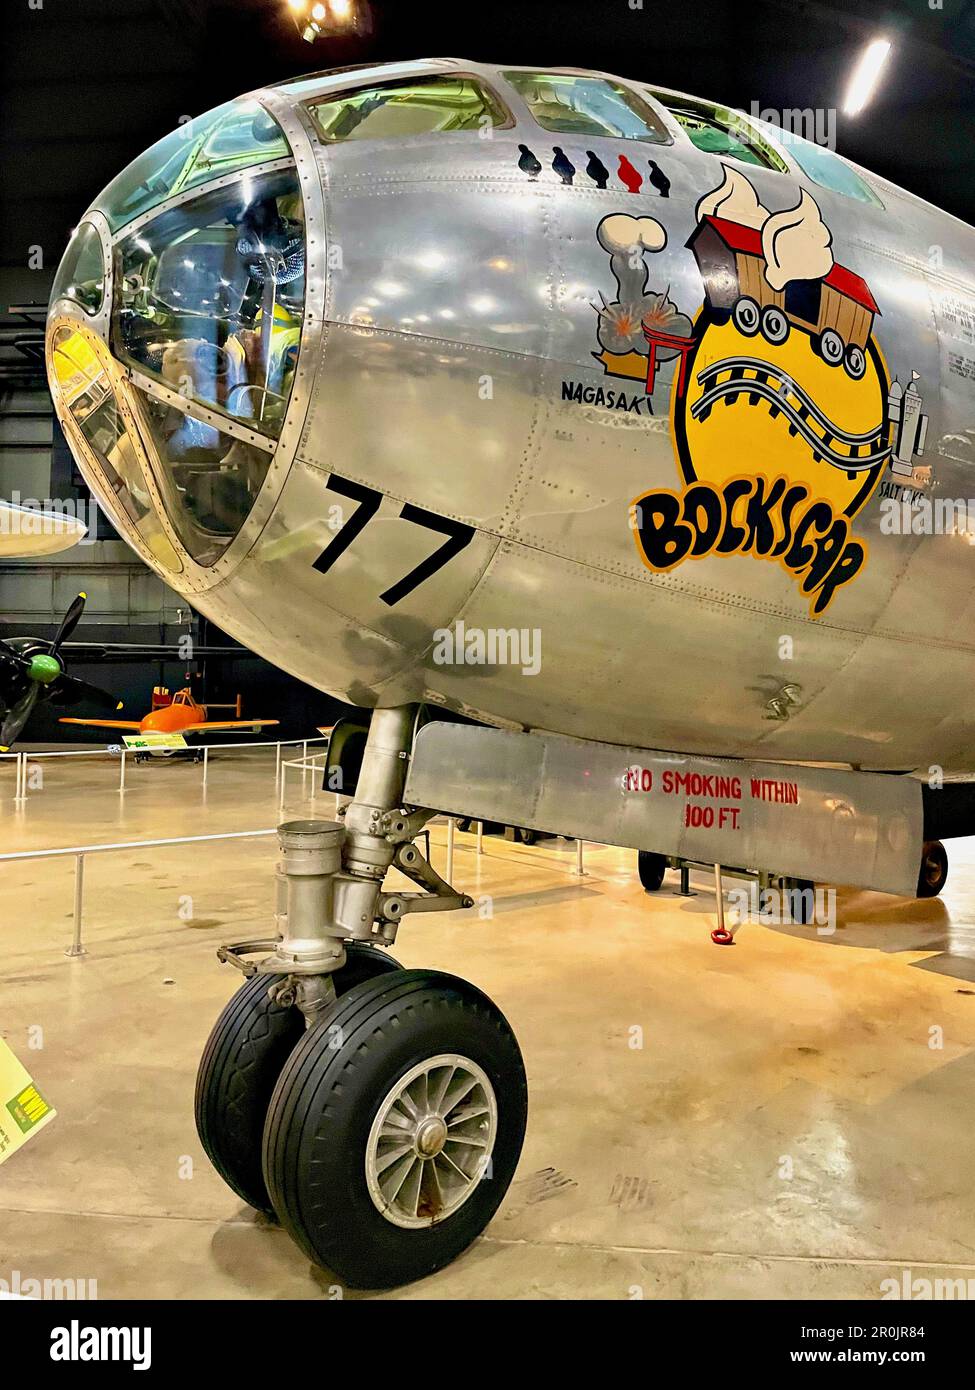 Diese B-29 Superfestung, bekannt als „Bockscar“, hat am 9. August 1945 im Zweiten Weltkrieg die Atombombe „Fat man“ auf die japanische Stadt Nagasaki geworfen. Stockfoto